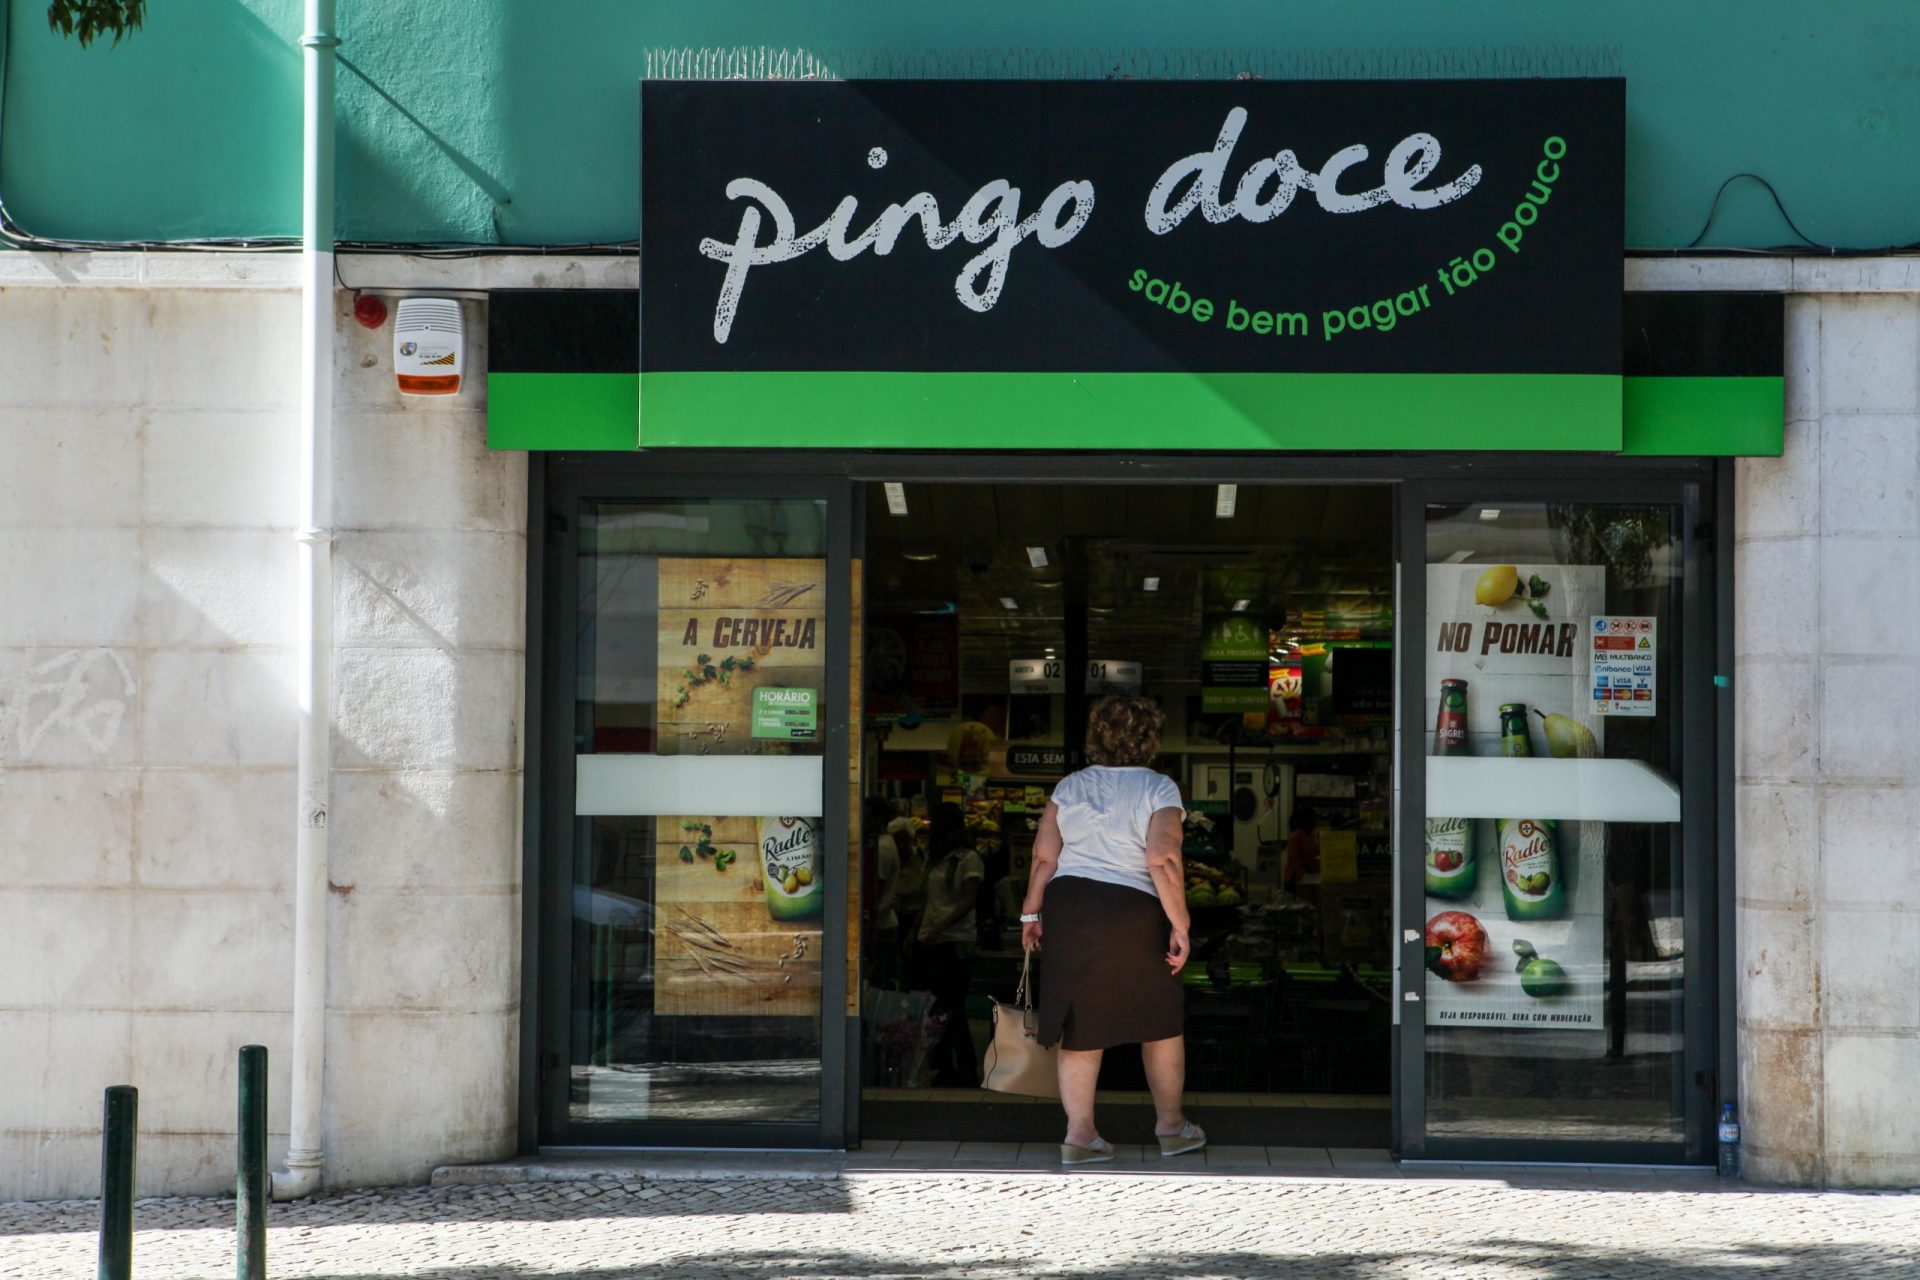 Alerta. Mensagem fraudulenta do Pingo Doce oferece vouchers de 500 euros